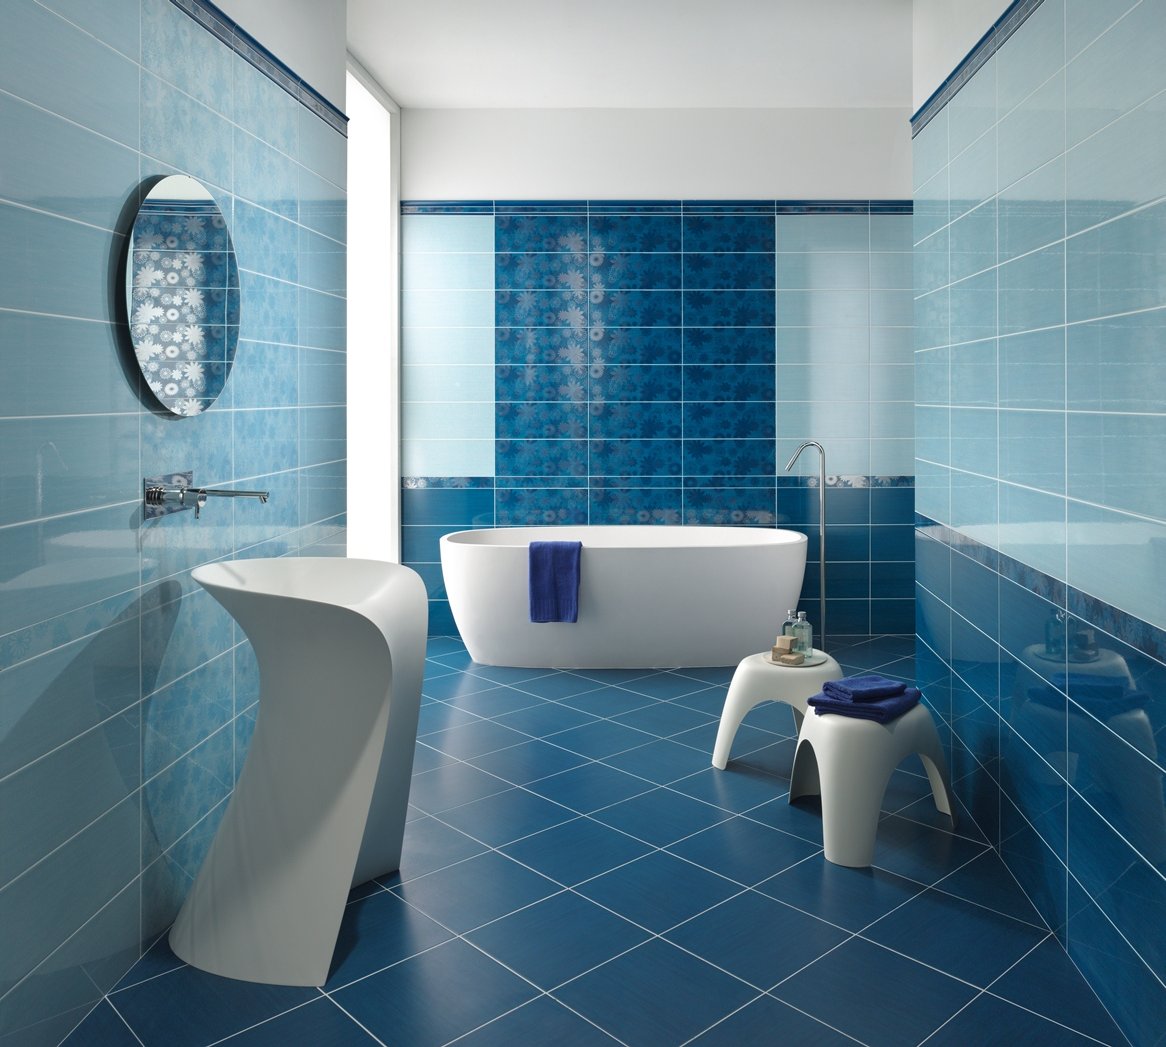 Аксессуары для голубой ванной комнаты